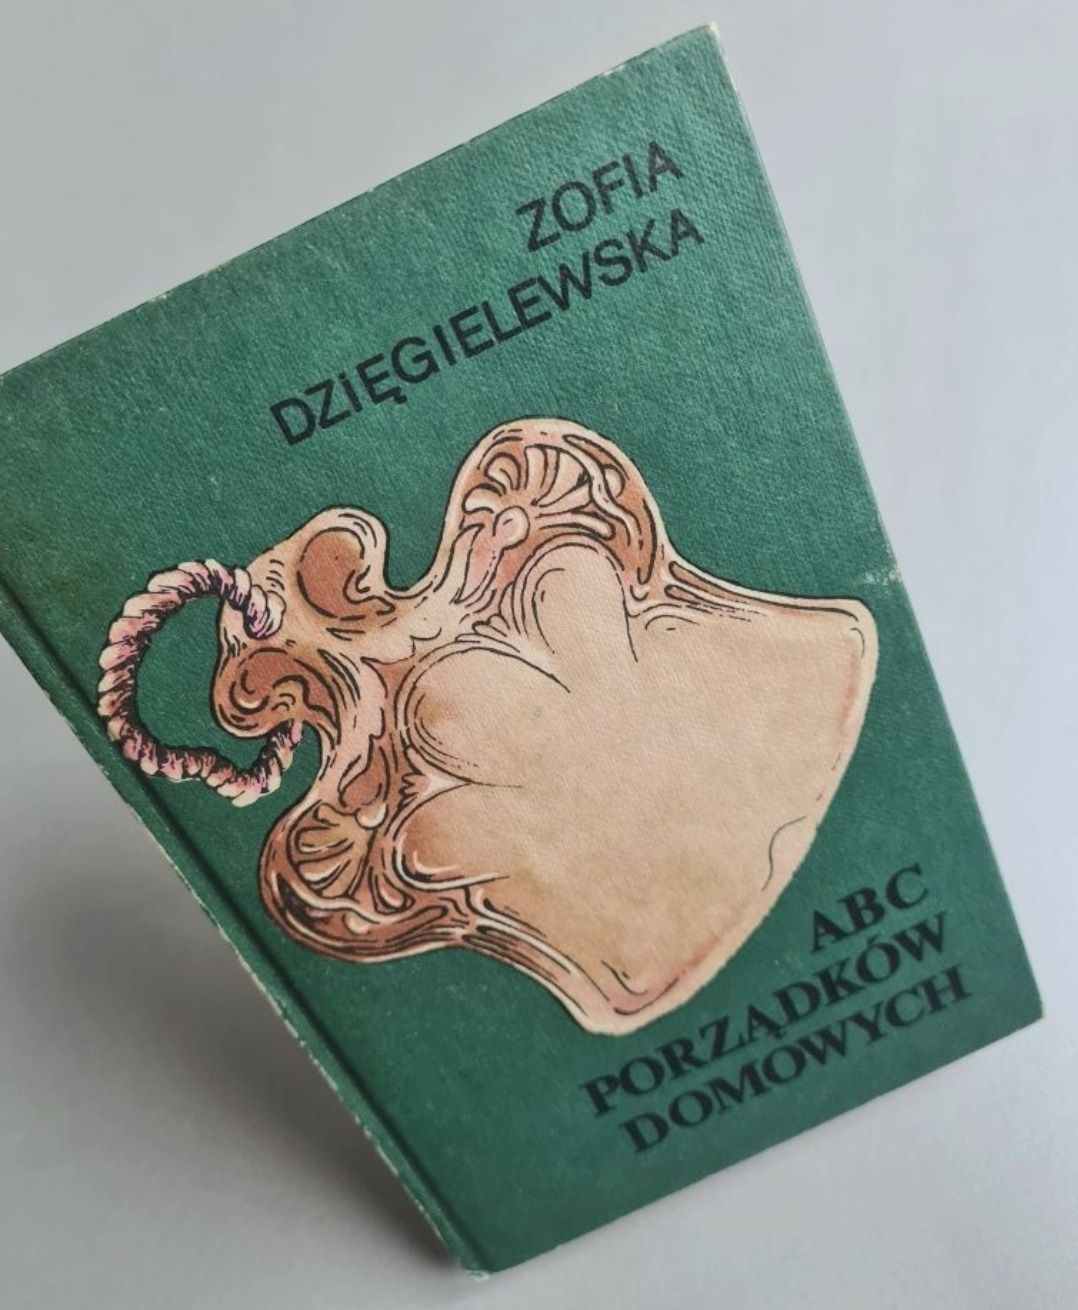 ABC porządków domowych - Zofia Dzięgielewska